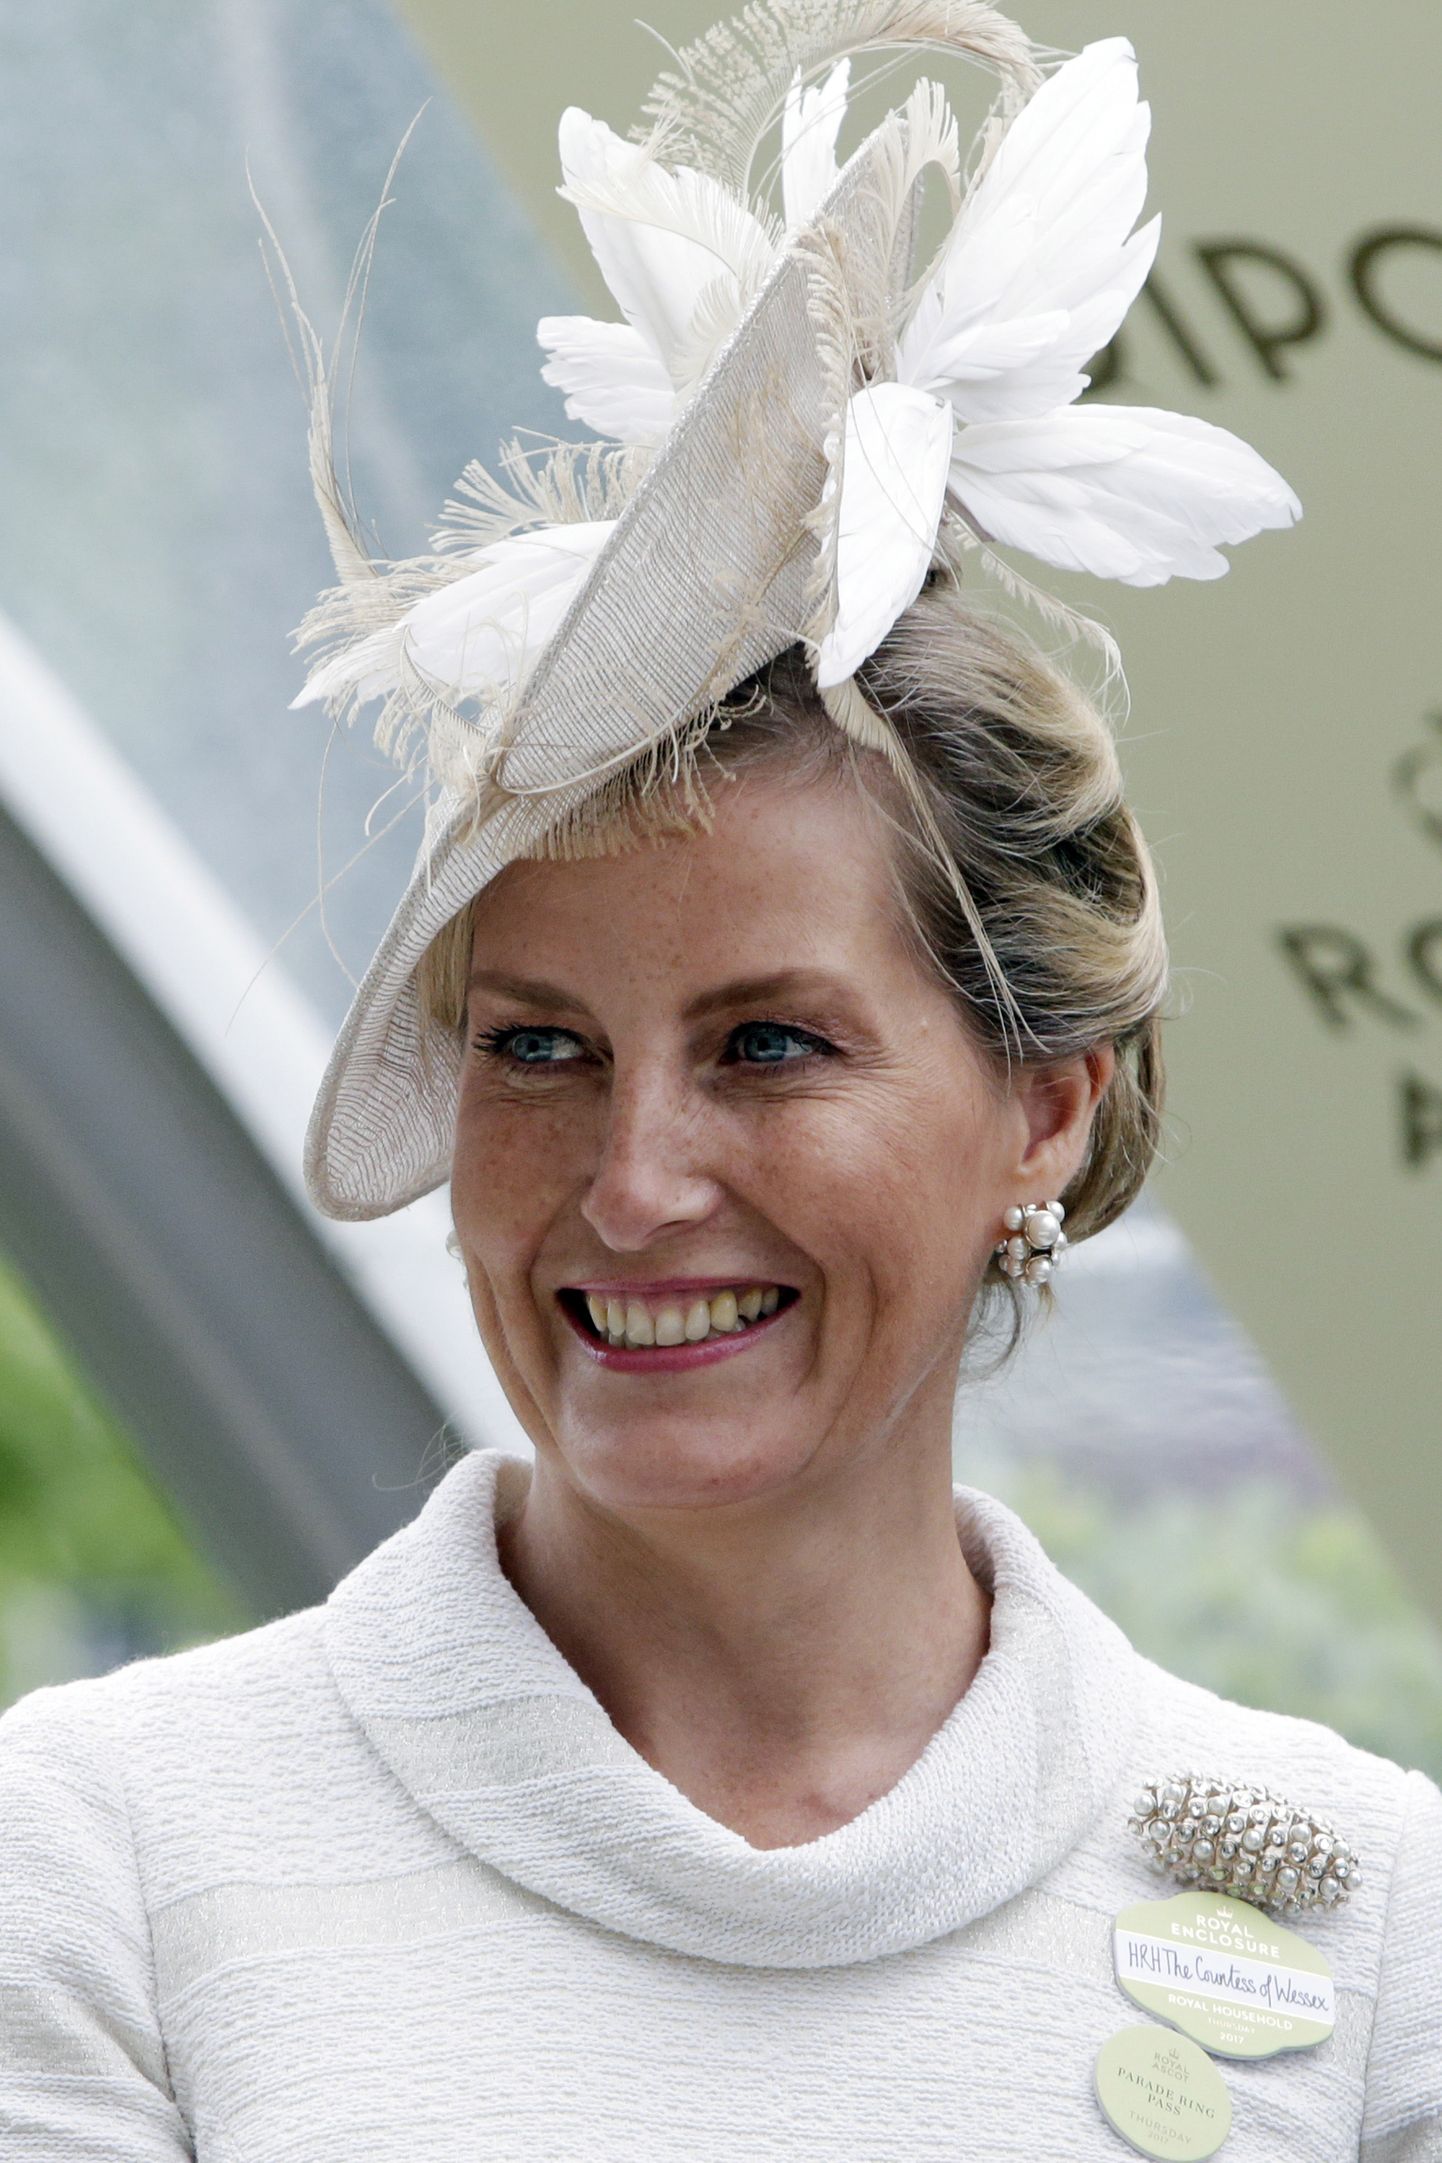 Wessexi krahvinna Sophie juunis 2017 Ascoti võiduajamistel